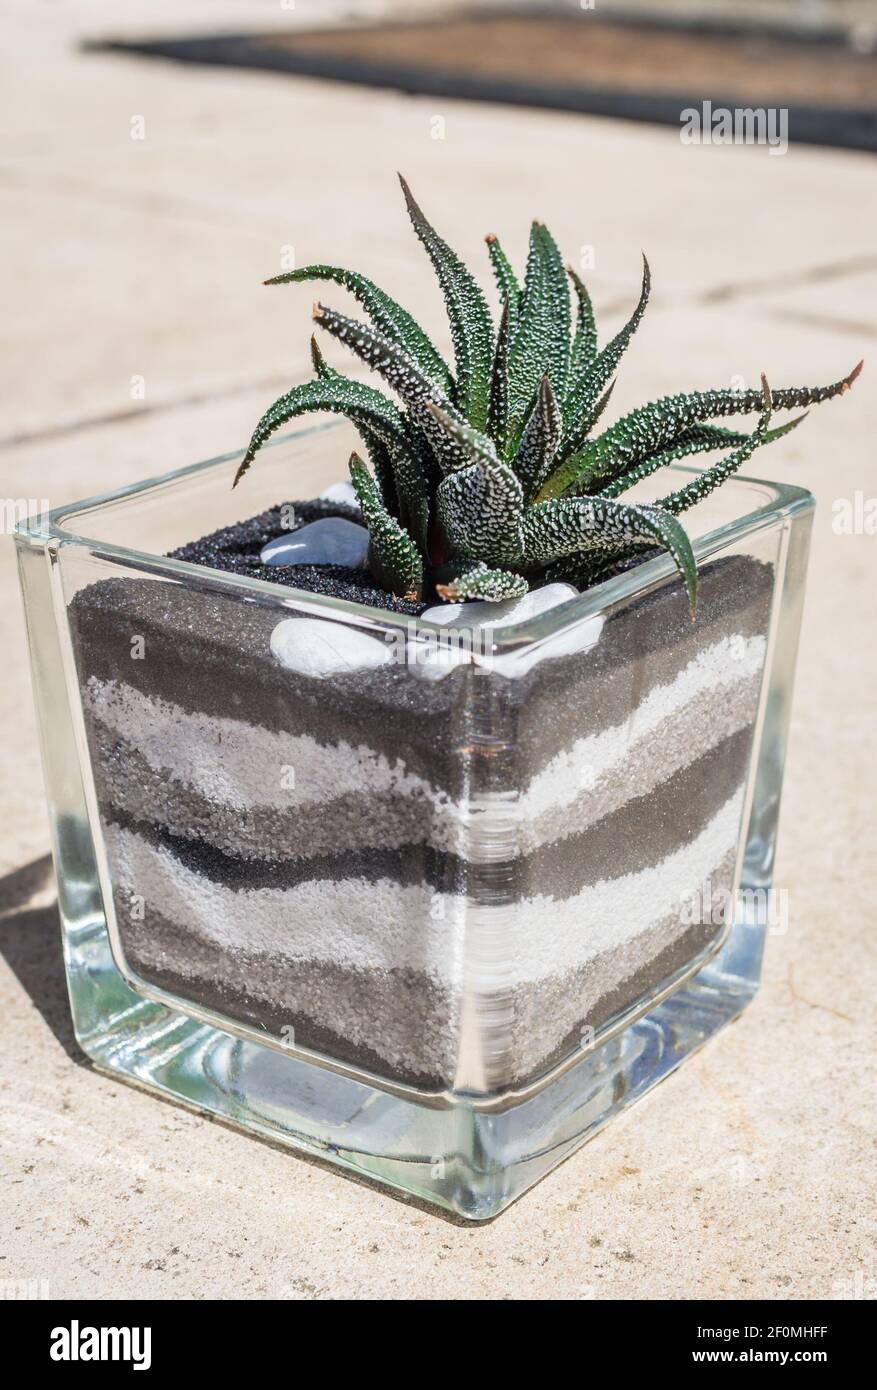 LIVING!! Real Succulent And Cactus Terrarium, Miniature Greenhouse Pendant